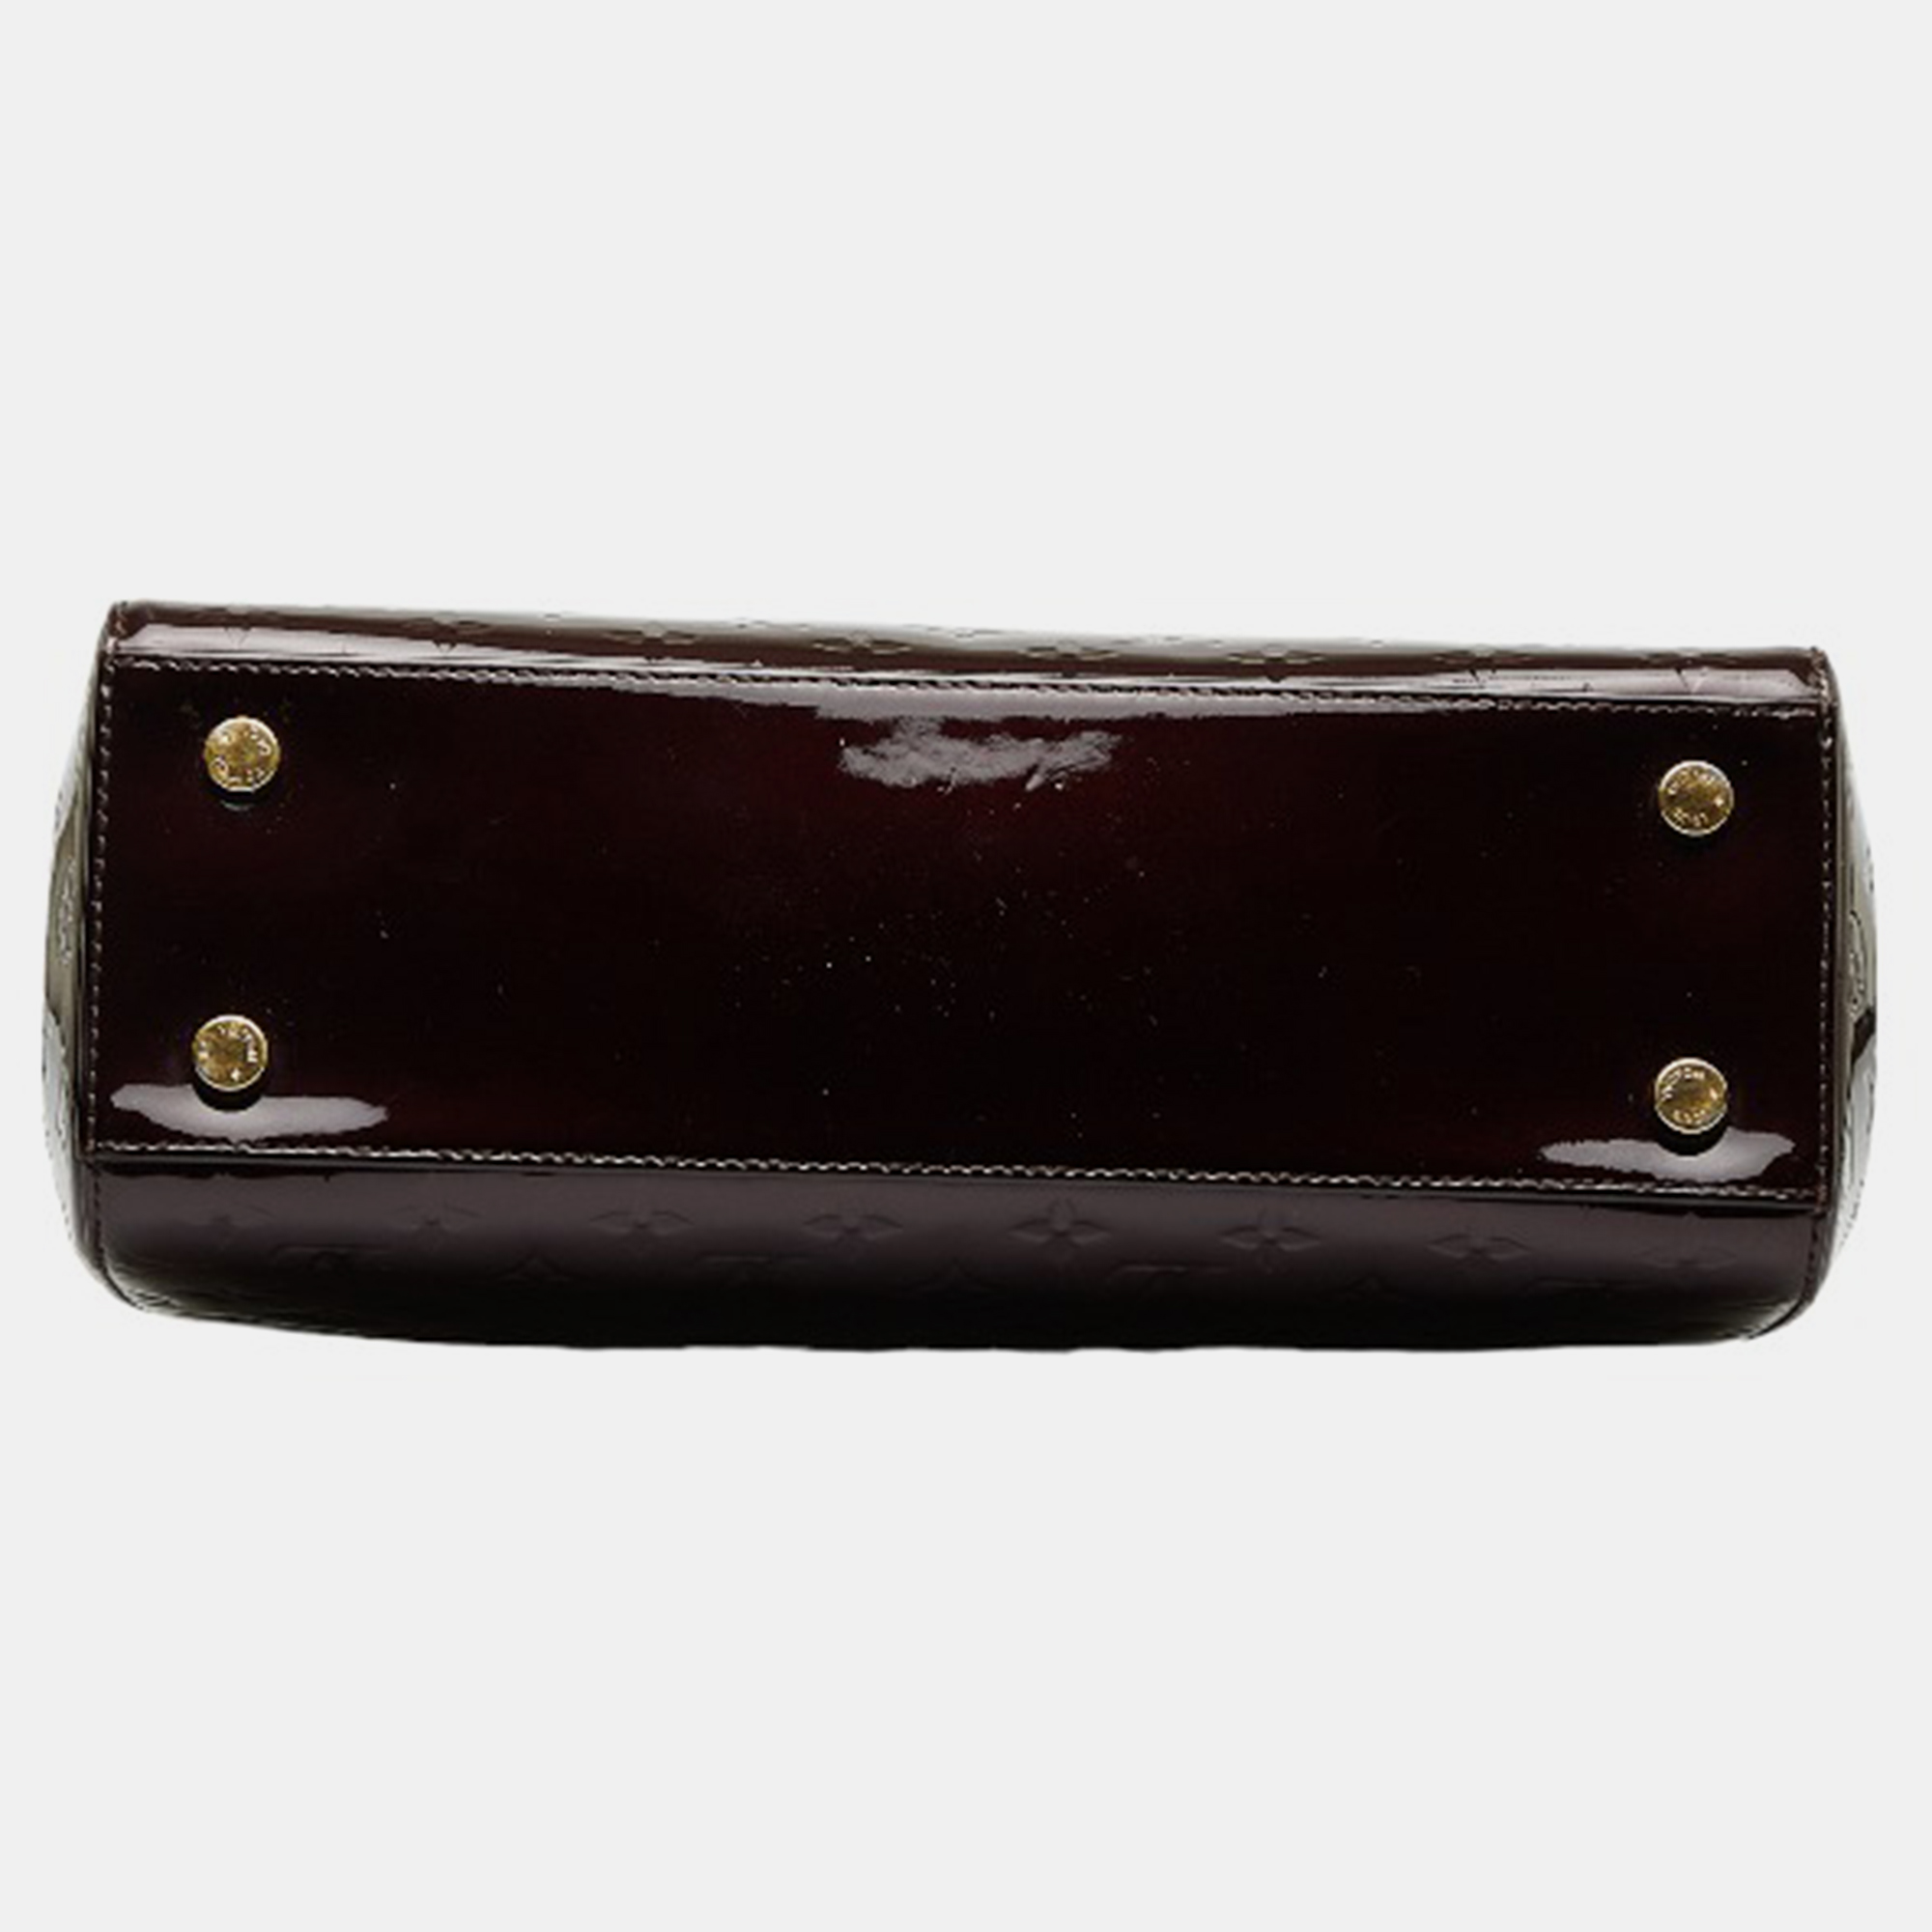 Louis Vuitton Brown/Beige Patent Leather MM Brea Satchel Bag